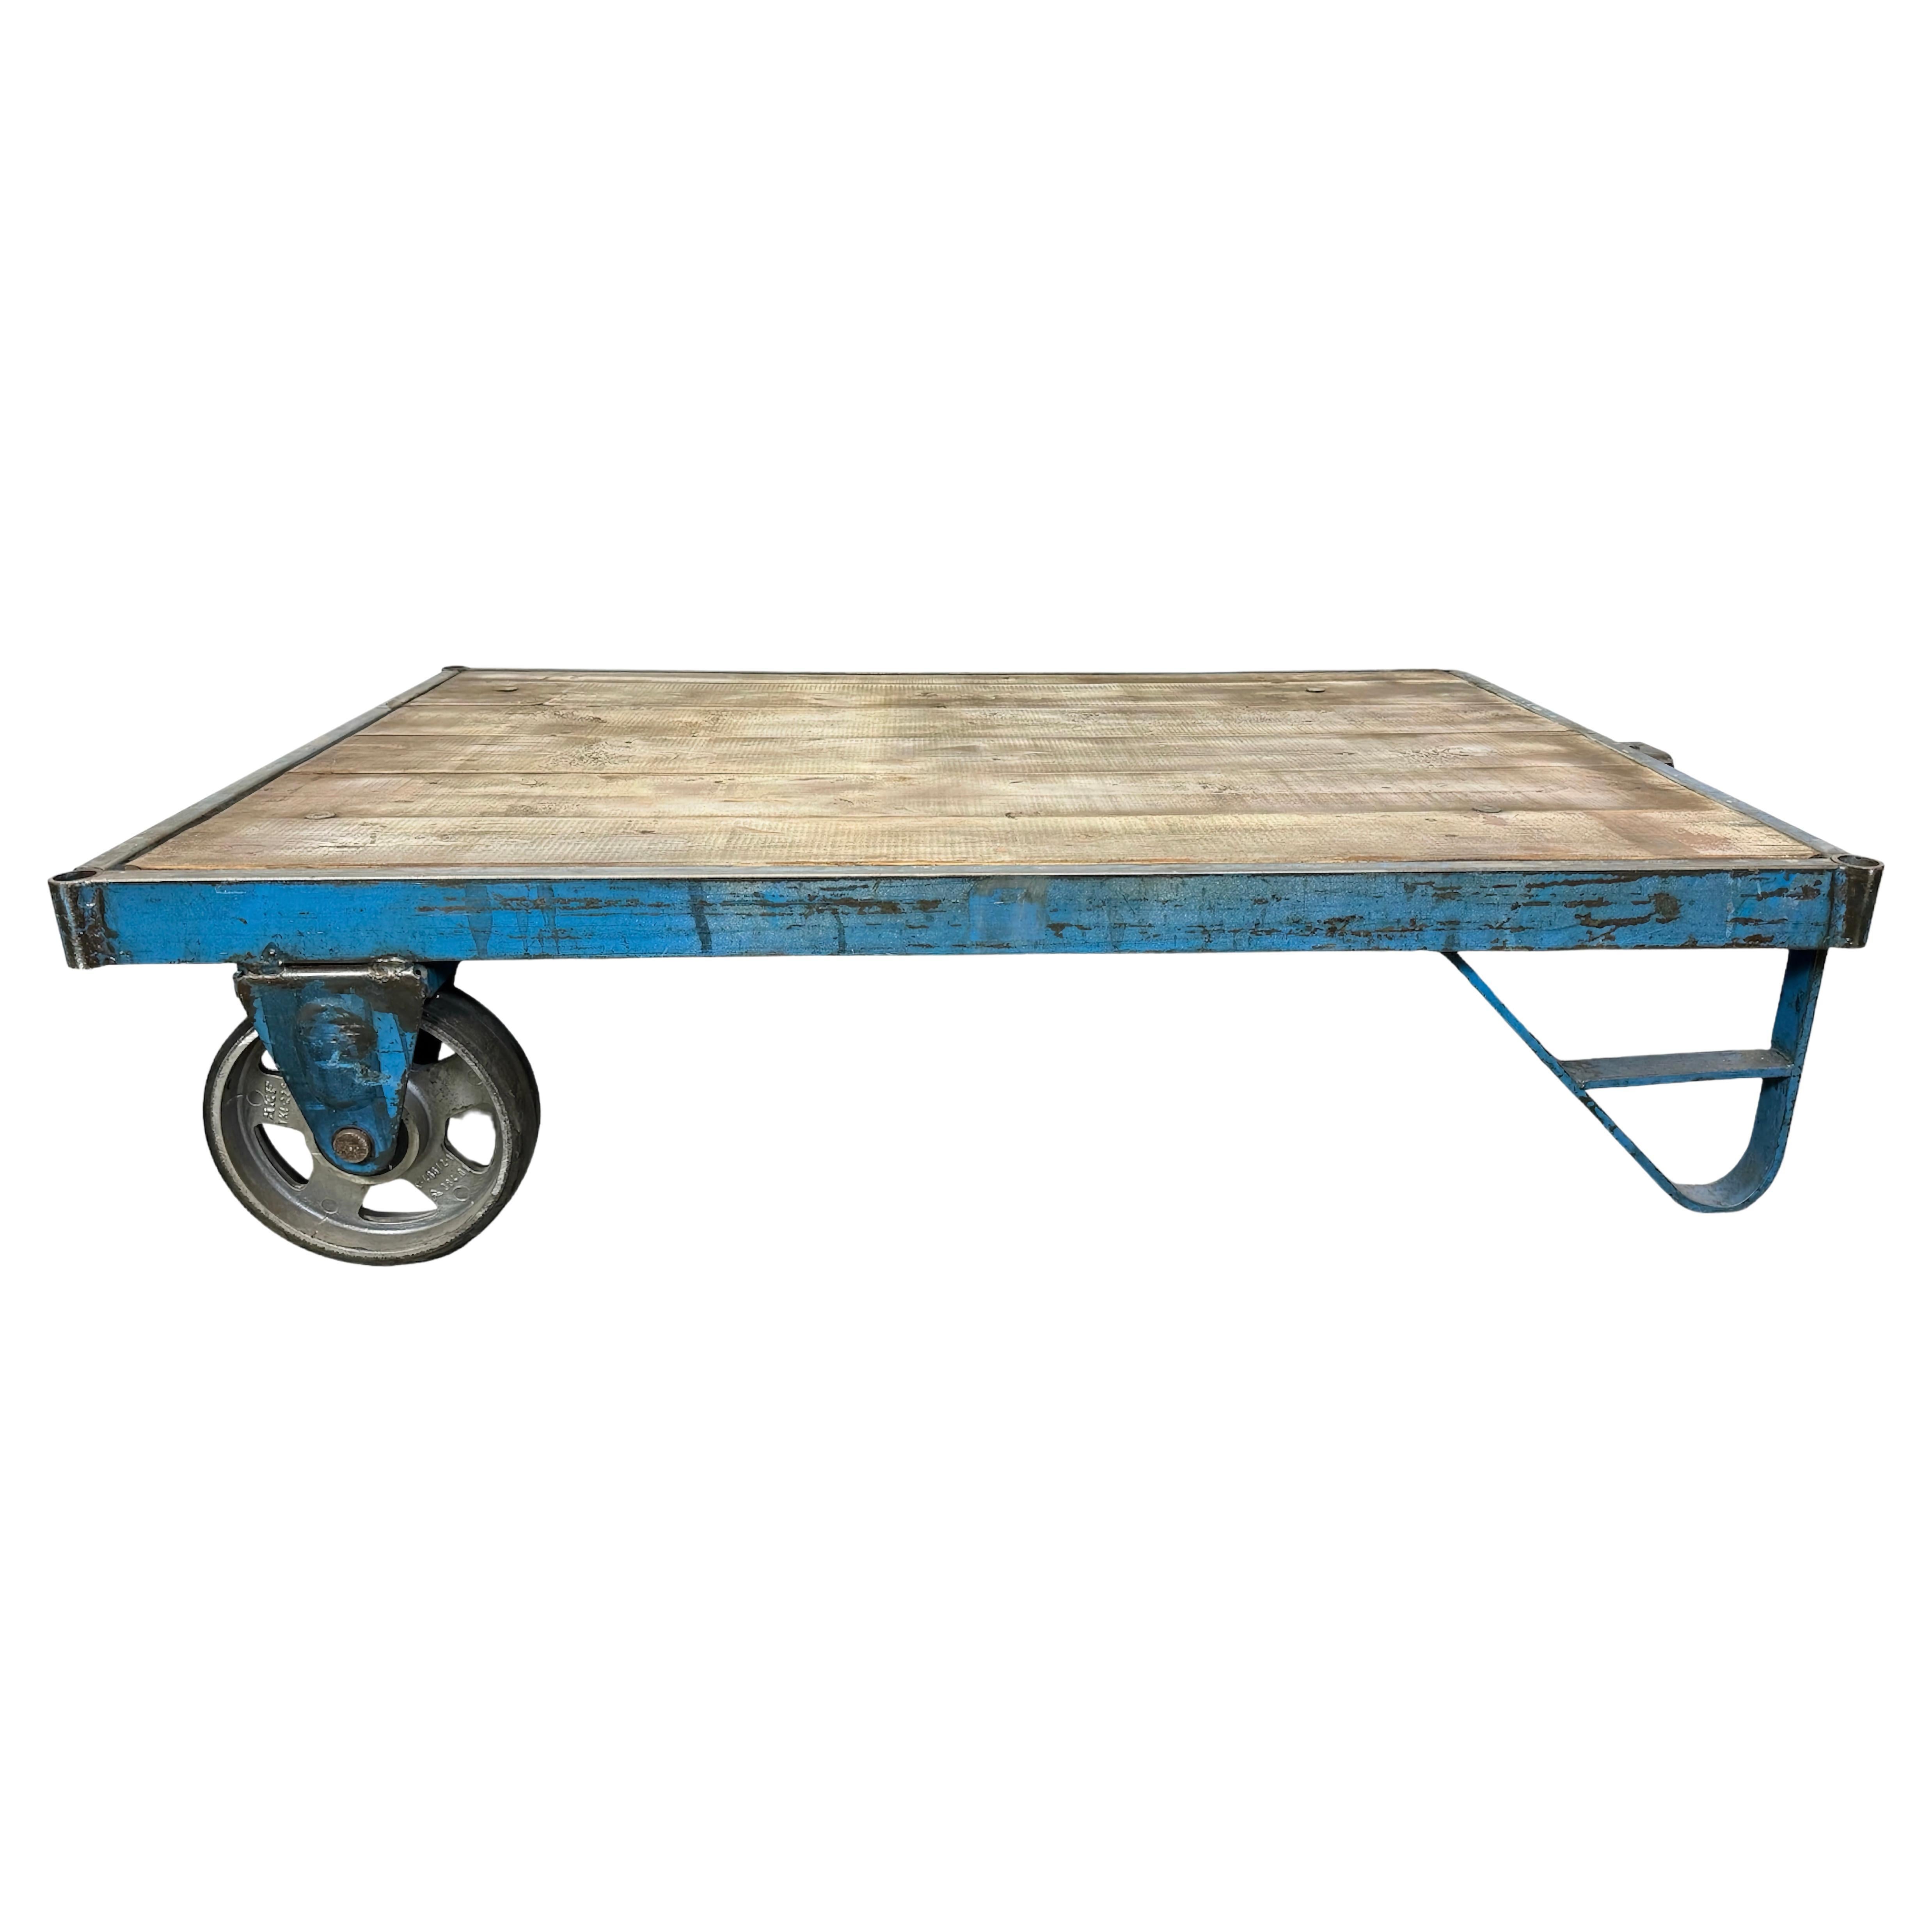 Grand chariot de table basse industriel bleu, années 1960